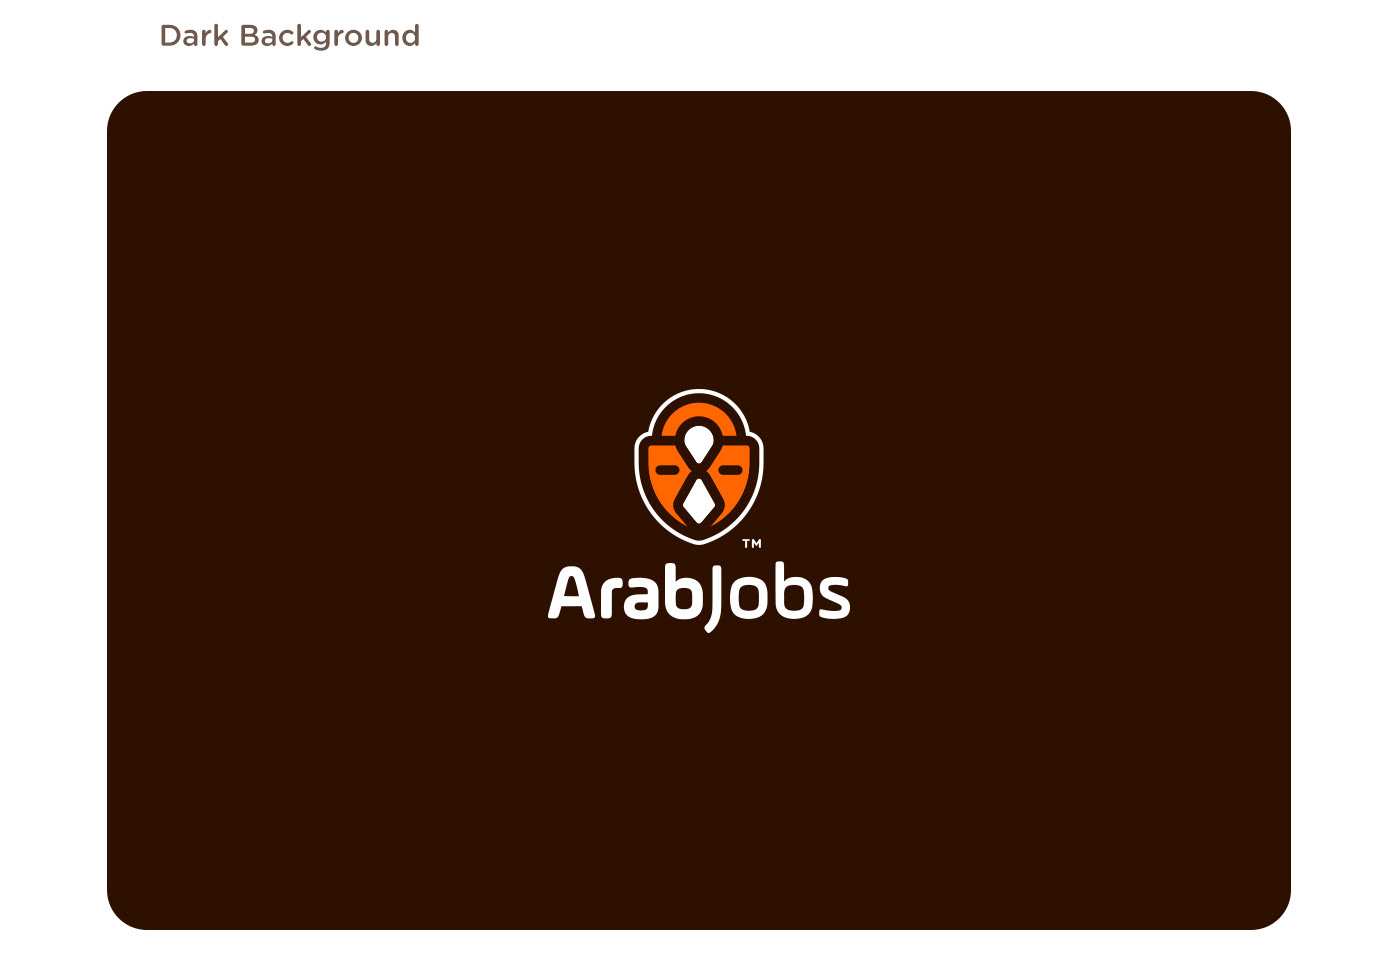 Jobs logo branding  brand Arabic logo شعار لوجو مصمم designer